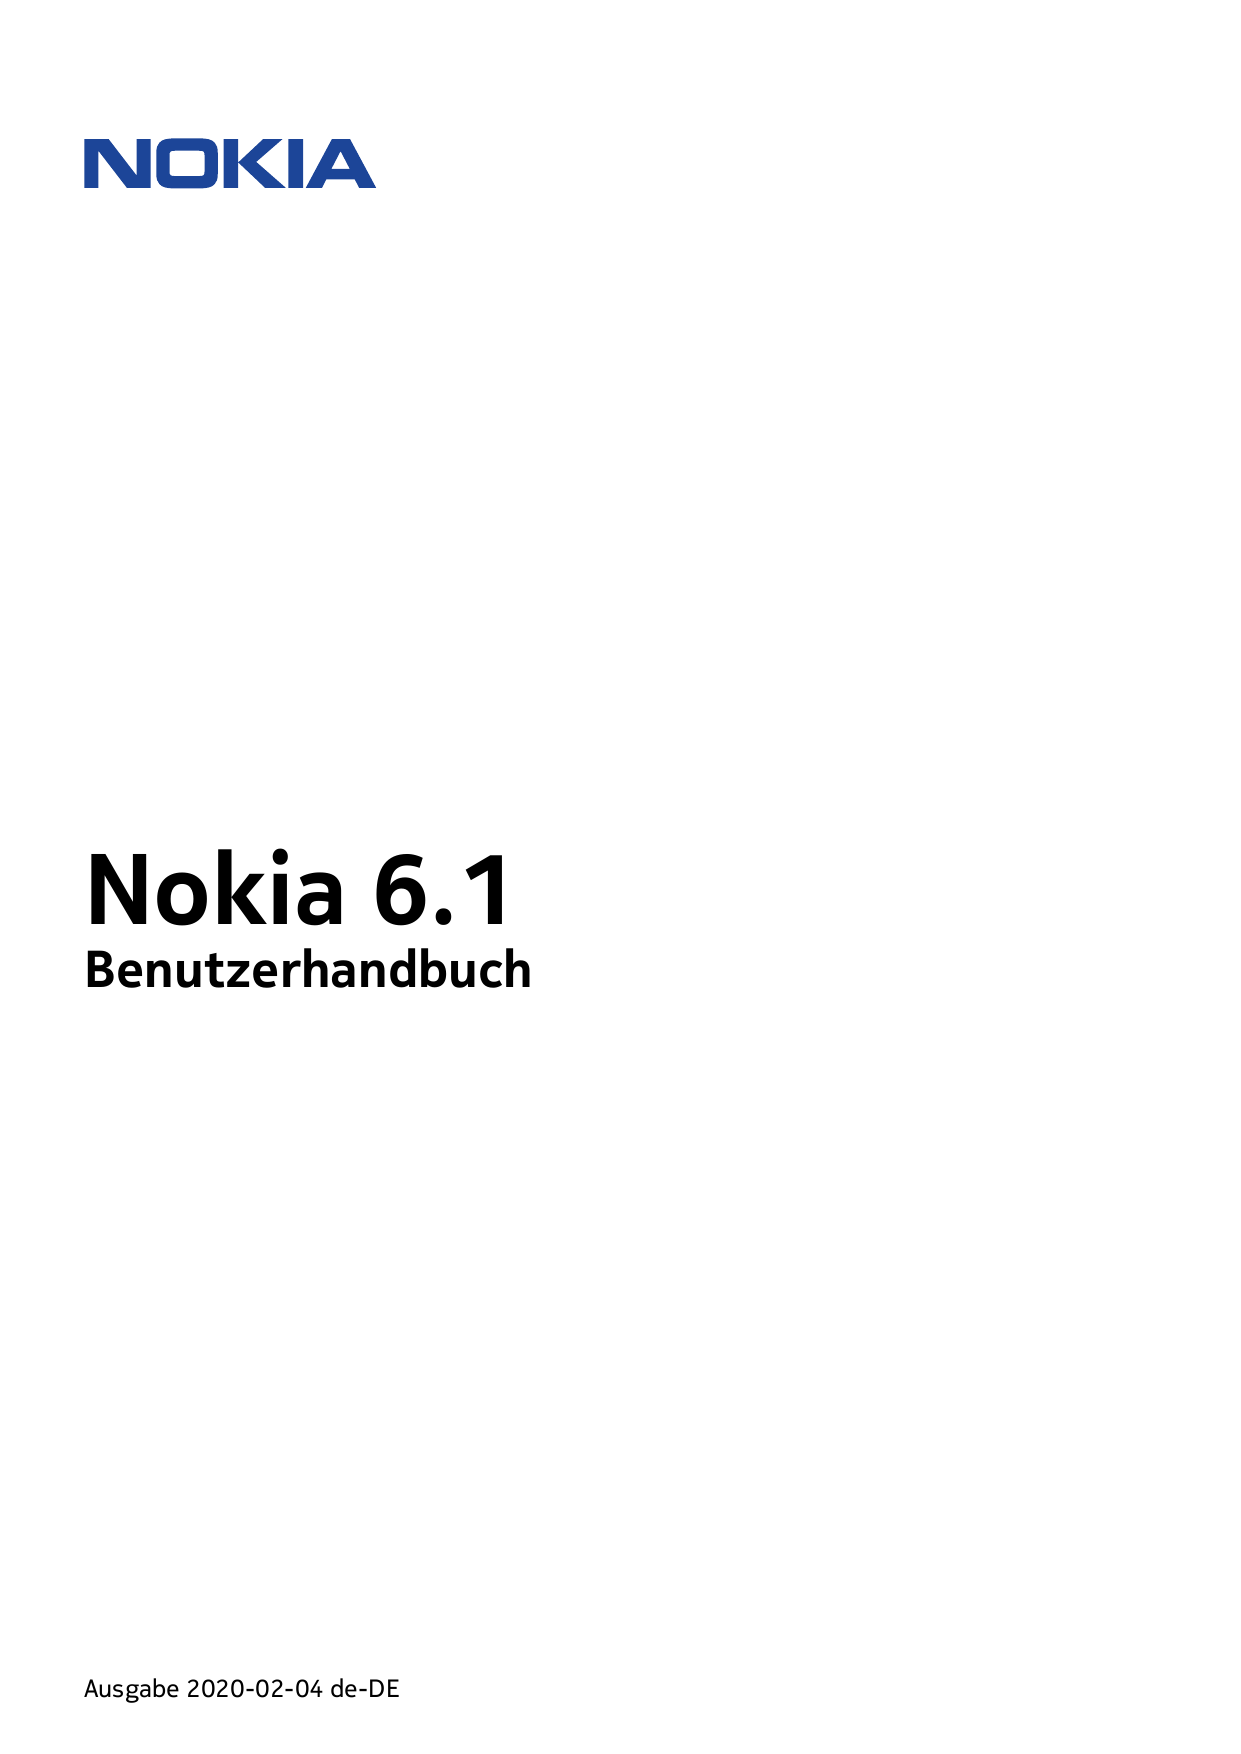 Nokia 6.1BenutzerhandbuchAusgabe 2020-02-04 de-DE